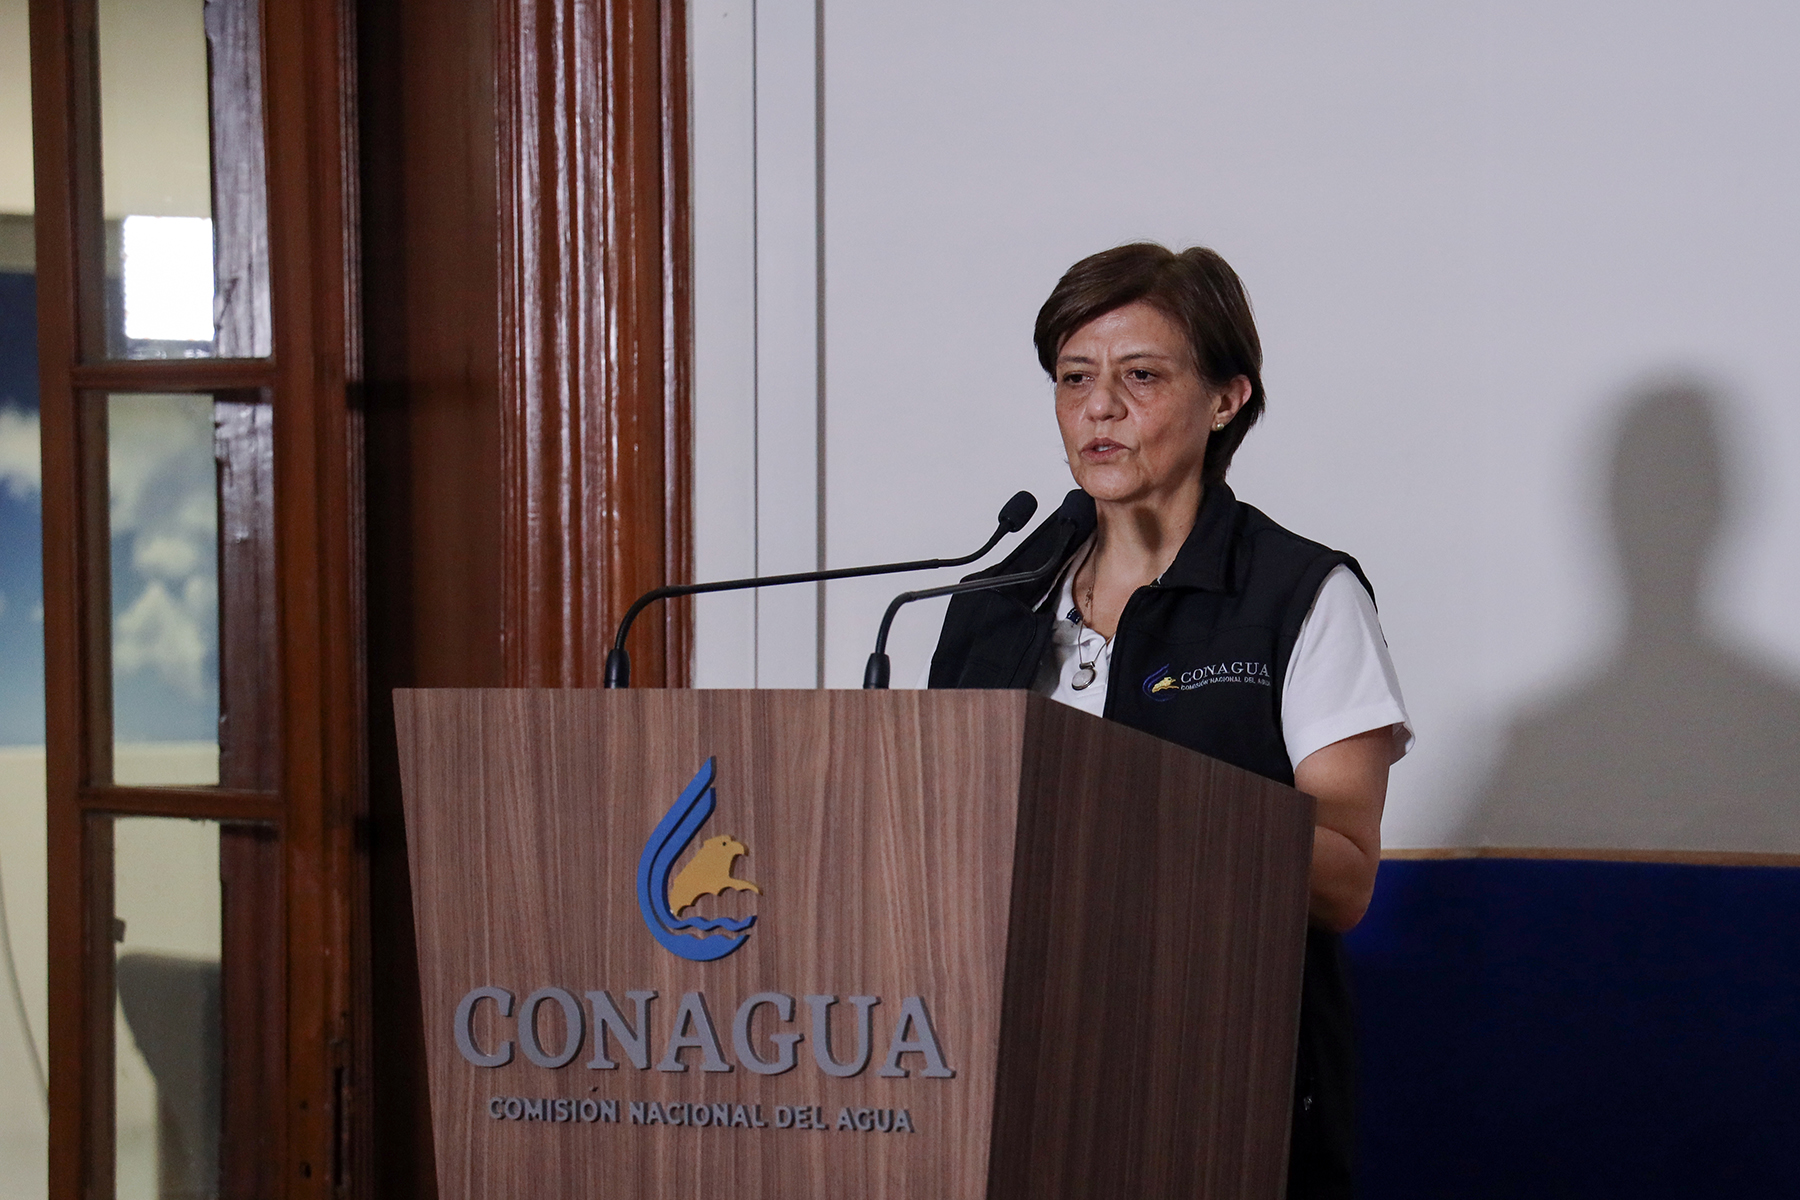 La directora general de Conagua, Blanca Jiménez Cisneros, informó sobre las acciones preventivas de la dependencia, ante los efectos en México de los remanentes de Amanda y la posible formación de un ciclón tropical en el sur del Golfo de México.